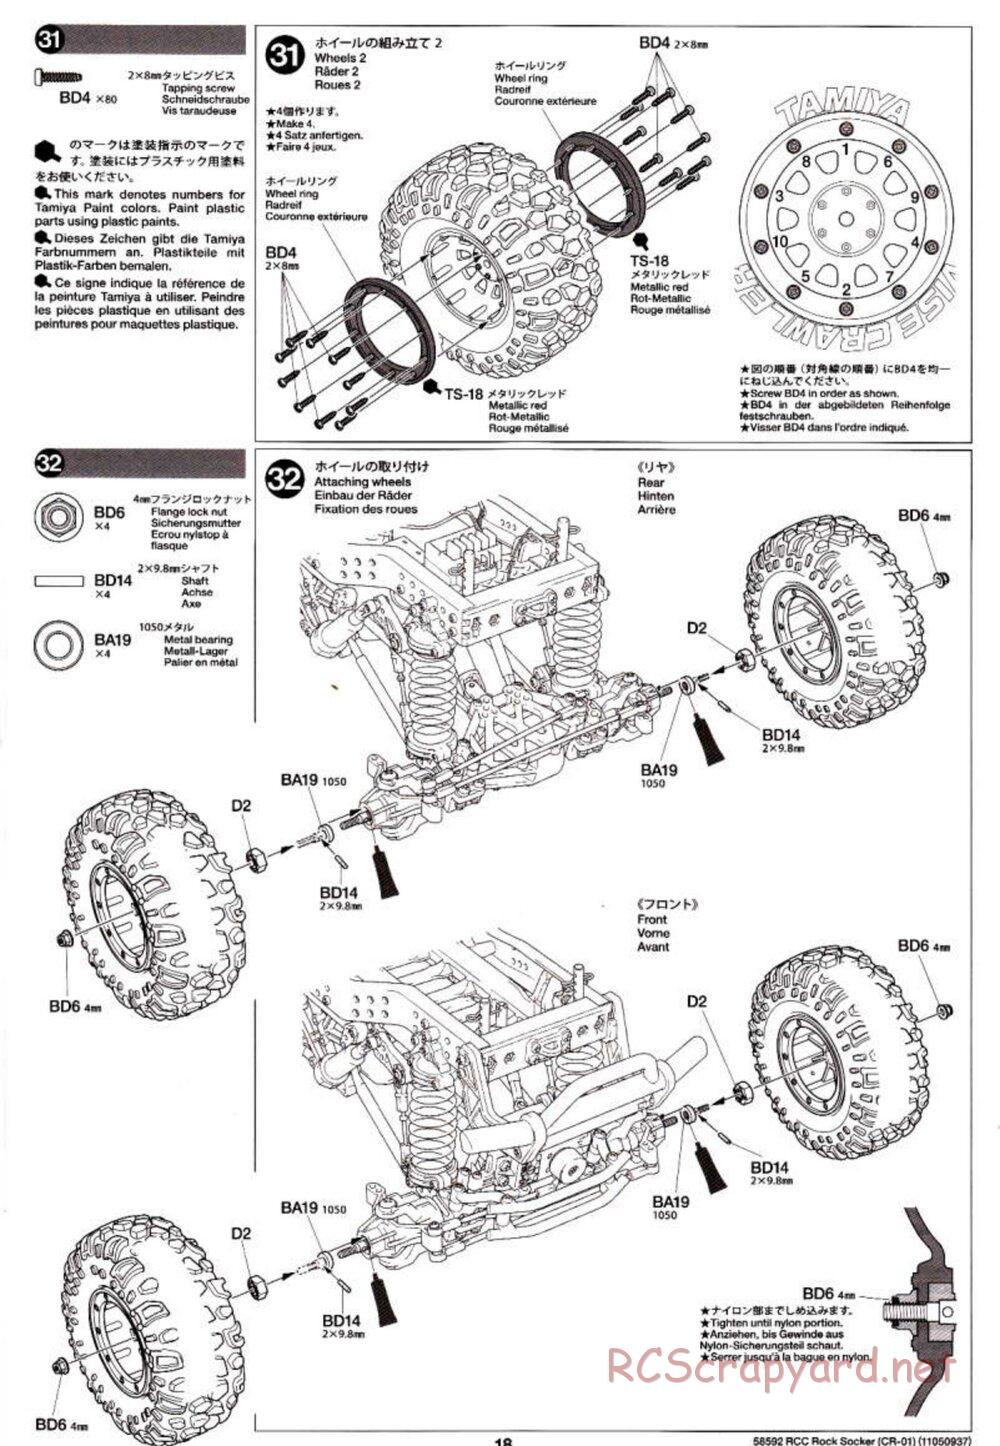 Tamiya - Rock Socker - CR-01 Chassis - Manual - Page 18